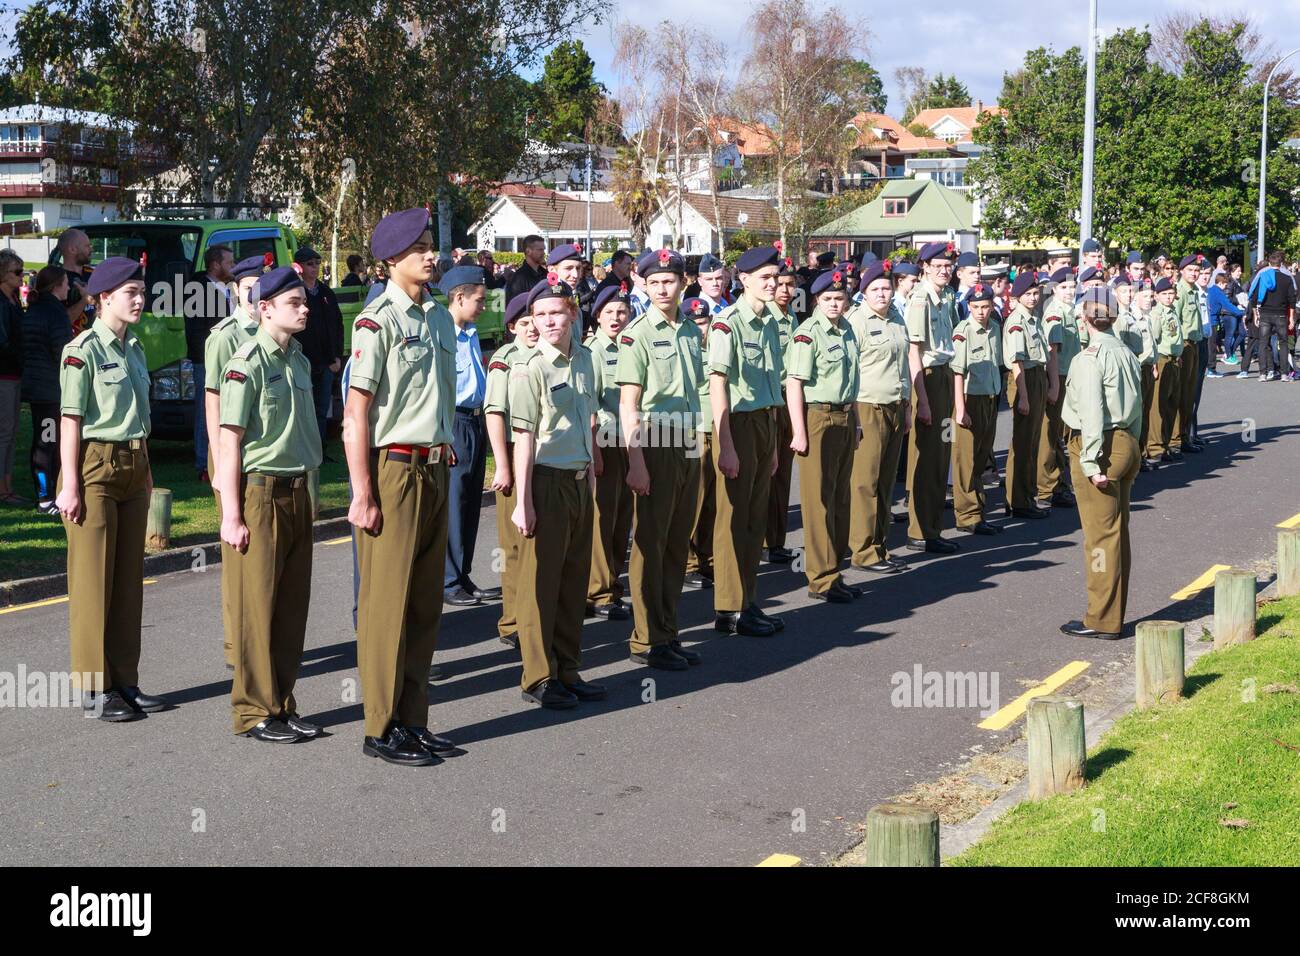 Un groupe de cadets de l'Armée néo-zélandaise est foré pendant la commémoration du jour d'Anzac à Memorial Park, Tauranga, Nouvelle-Zélande. Avril 25 2018 Banque D'Images